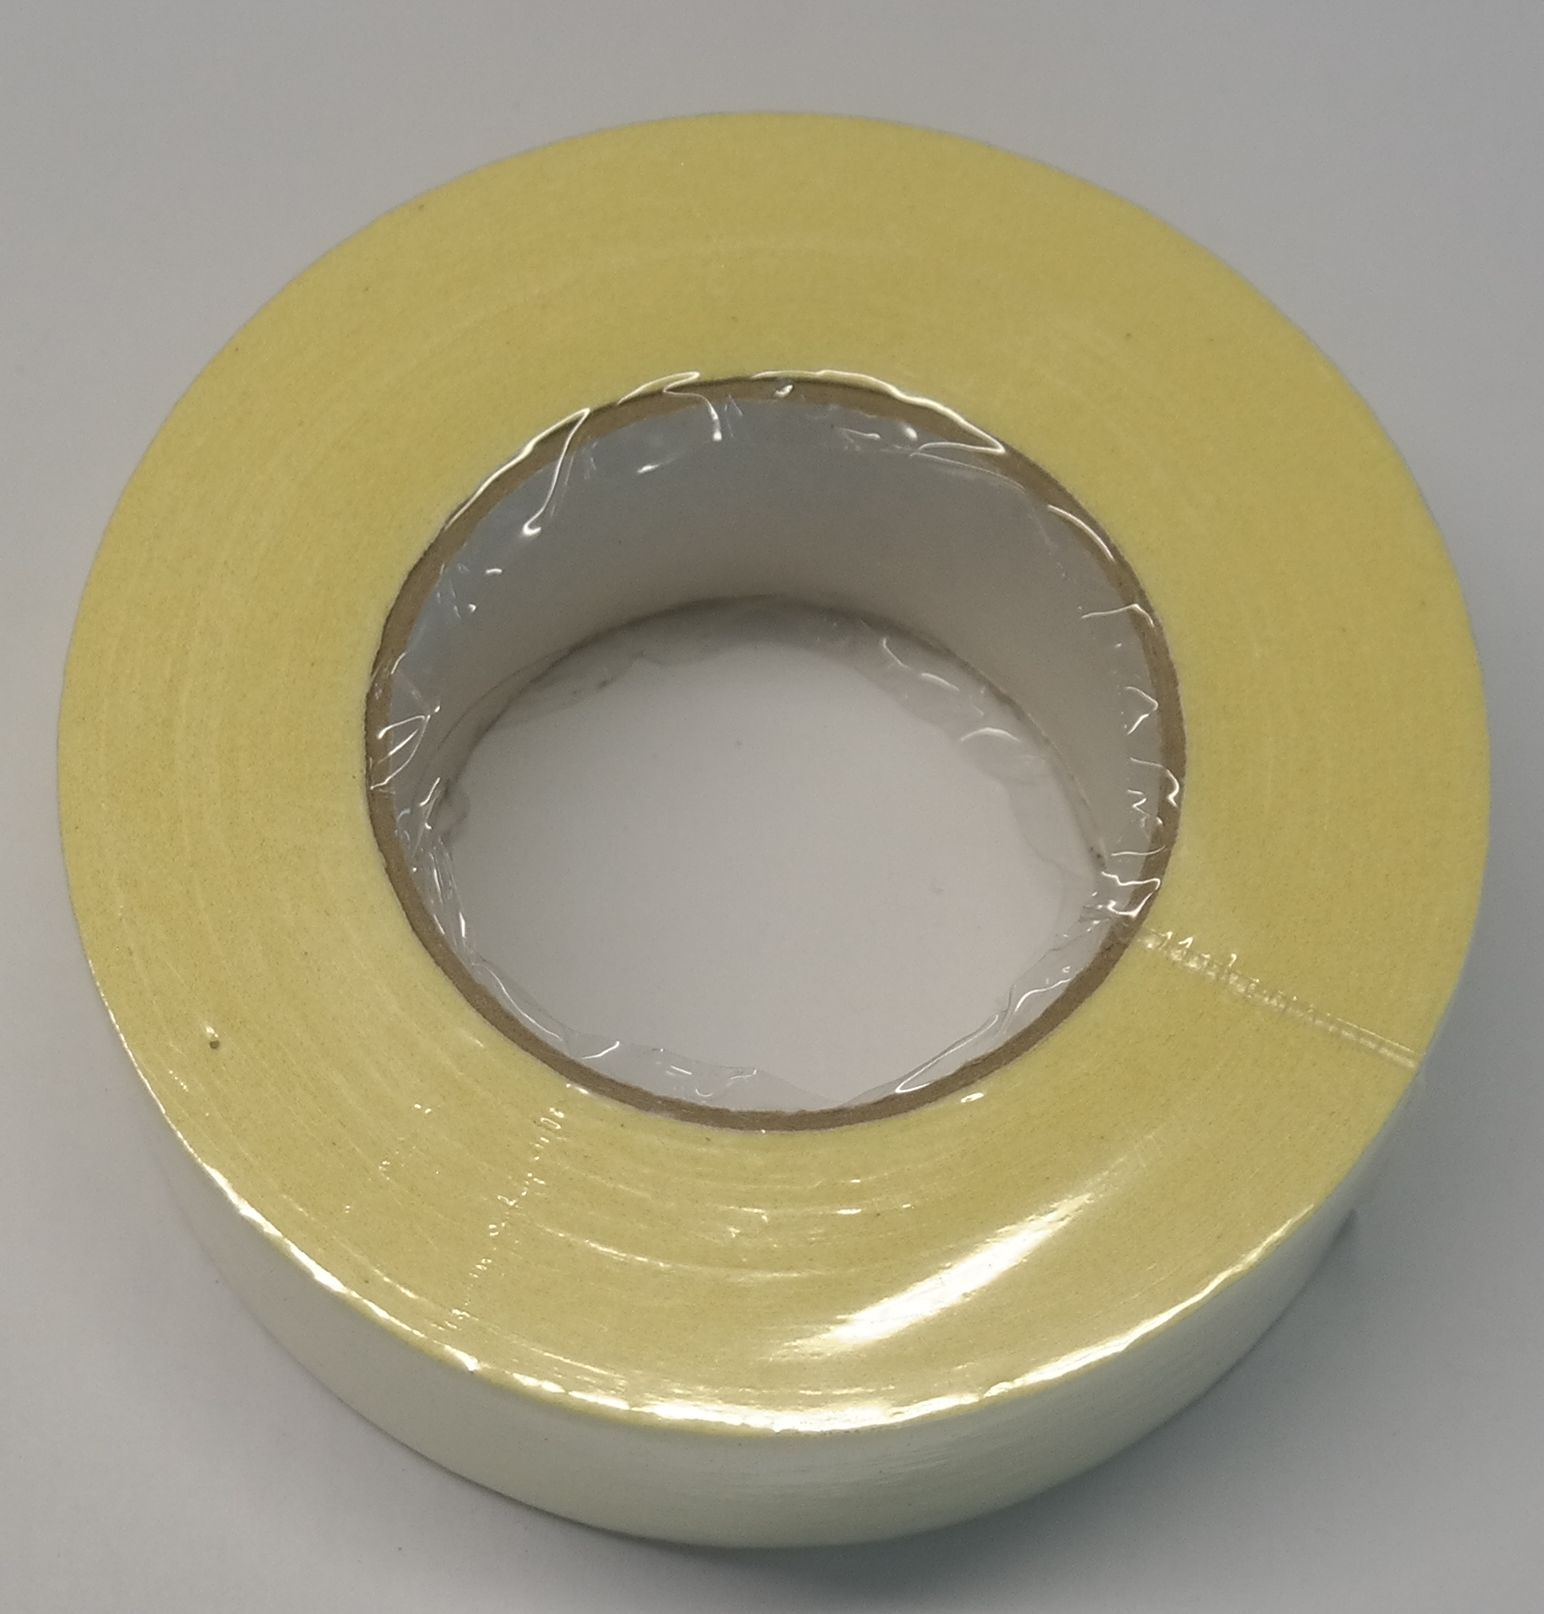 Adhesive crepe tape